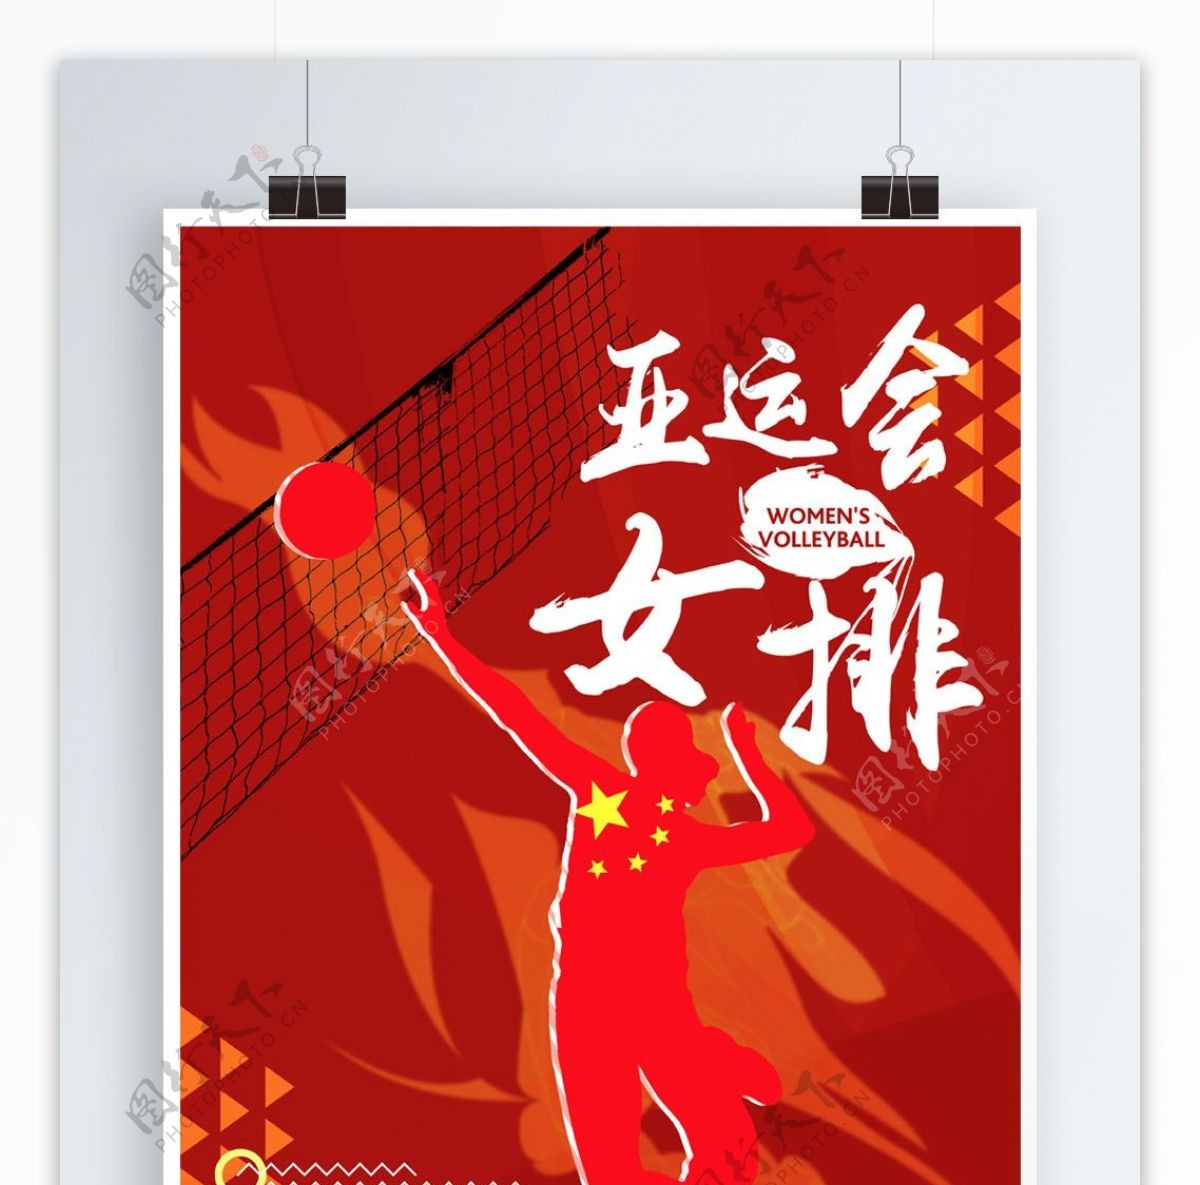 亚运会女排精神宣传海报